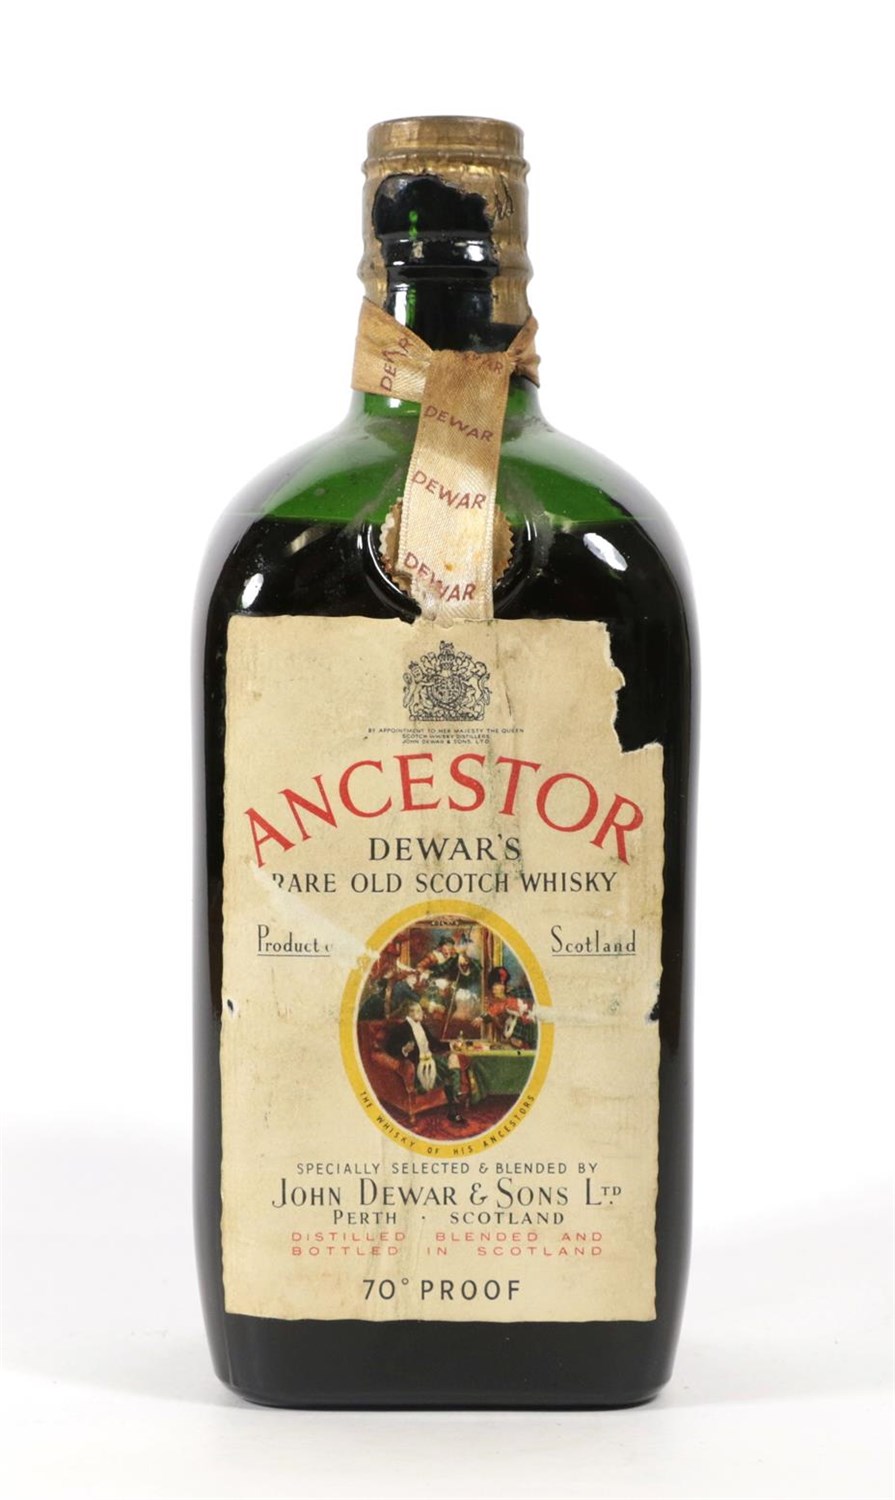 Lot 5078 - Dewar's Ancestor Rare Old Scotch Whisky, 1950s bottling, 70° proof (one bottle)